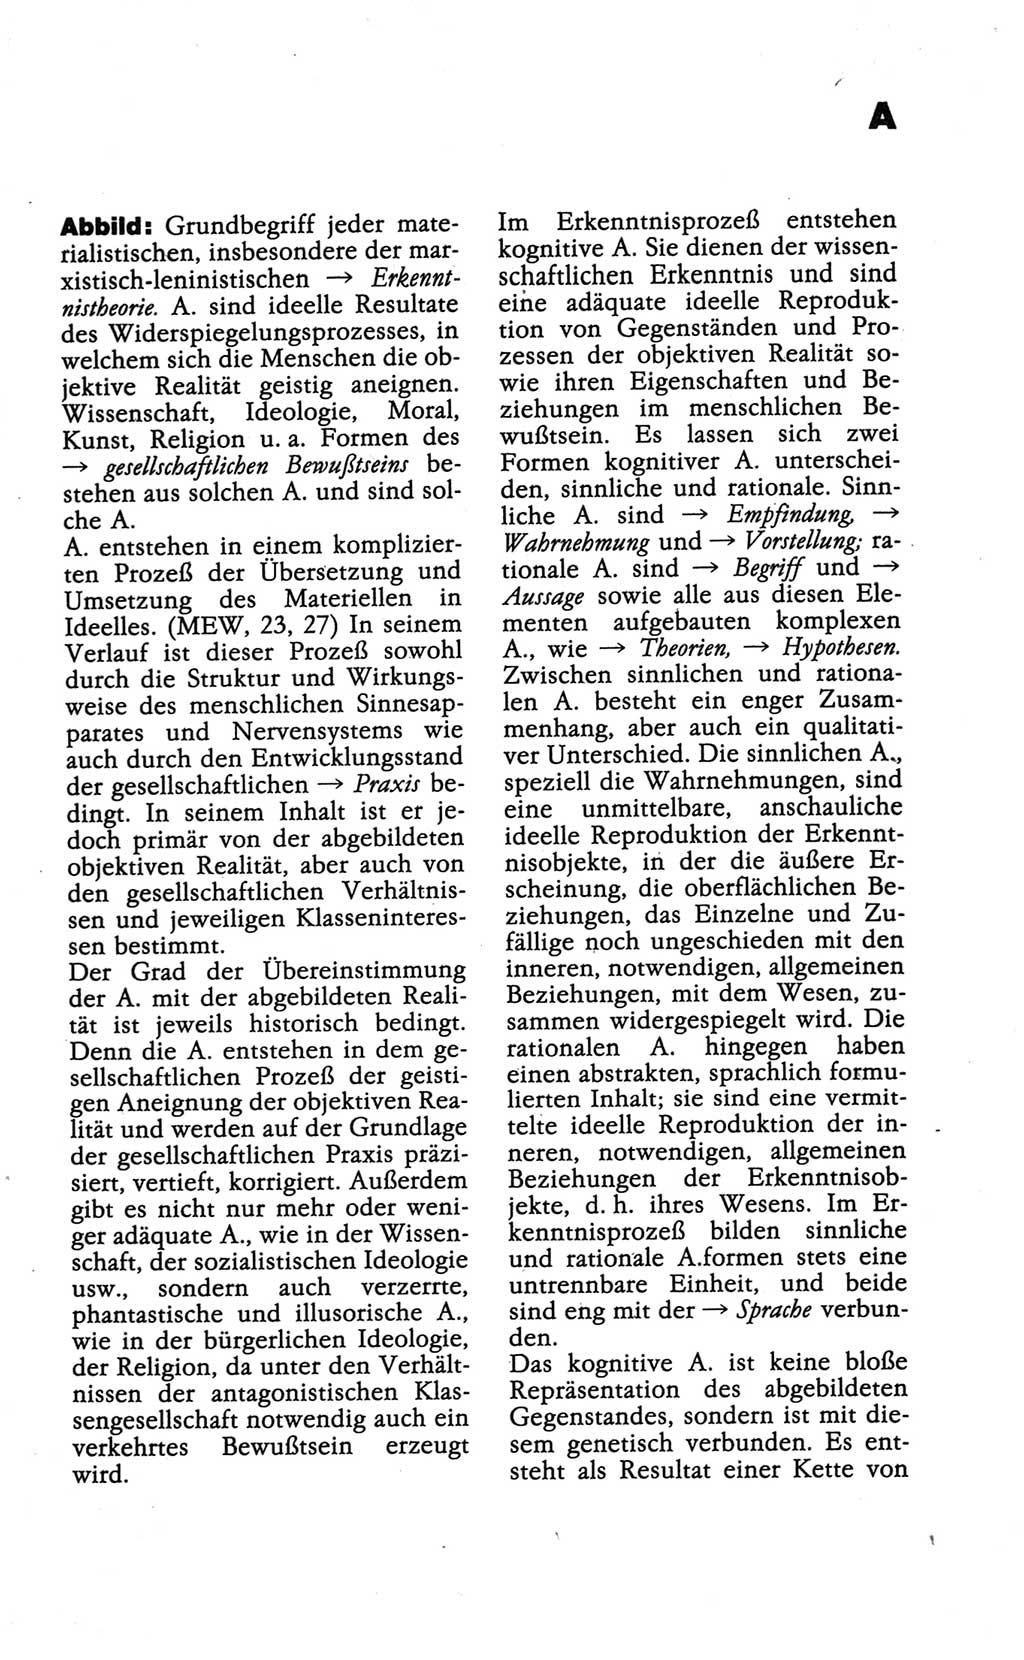 Wörterbuch der marxistisch-leninistischen Philosophie [Deutsche Demokratische Republik (DDR)] 1986, Seite 11 (Wb. ML Phil. DDR 1986, S. 11)